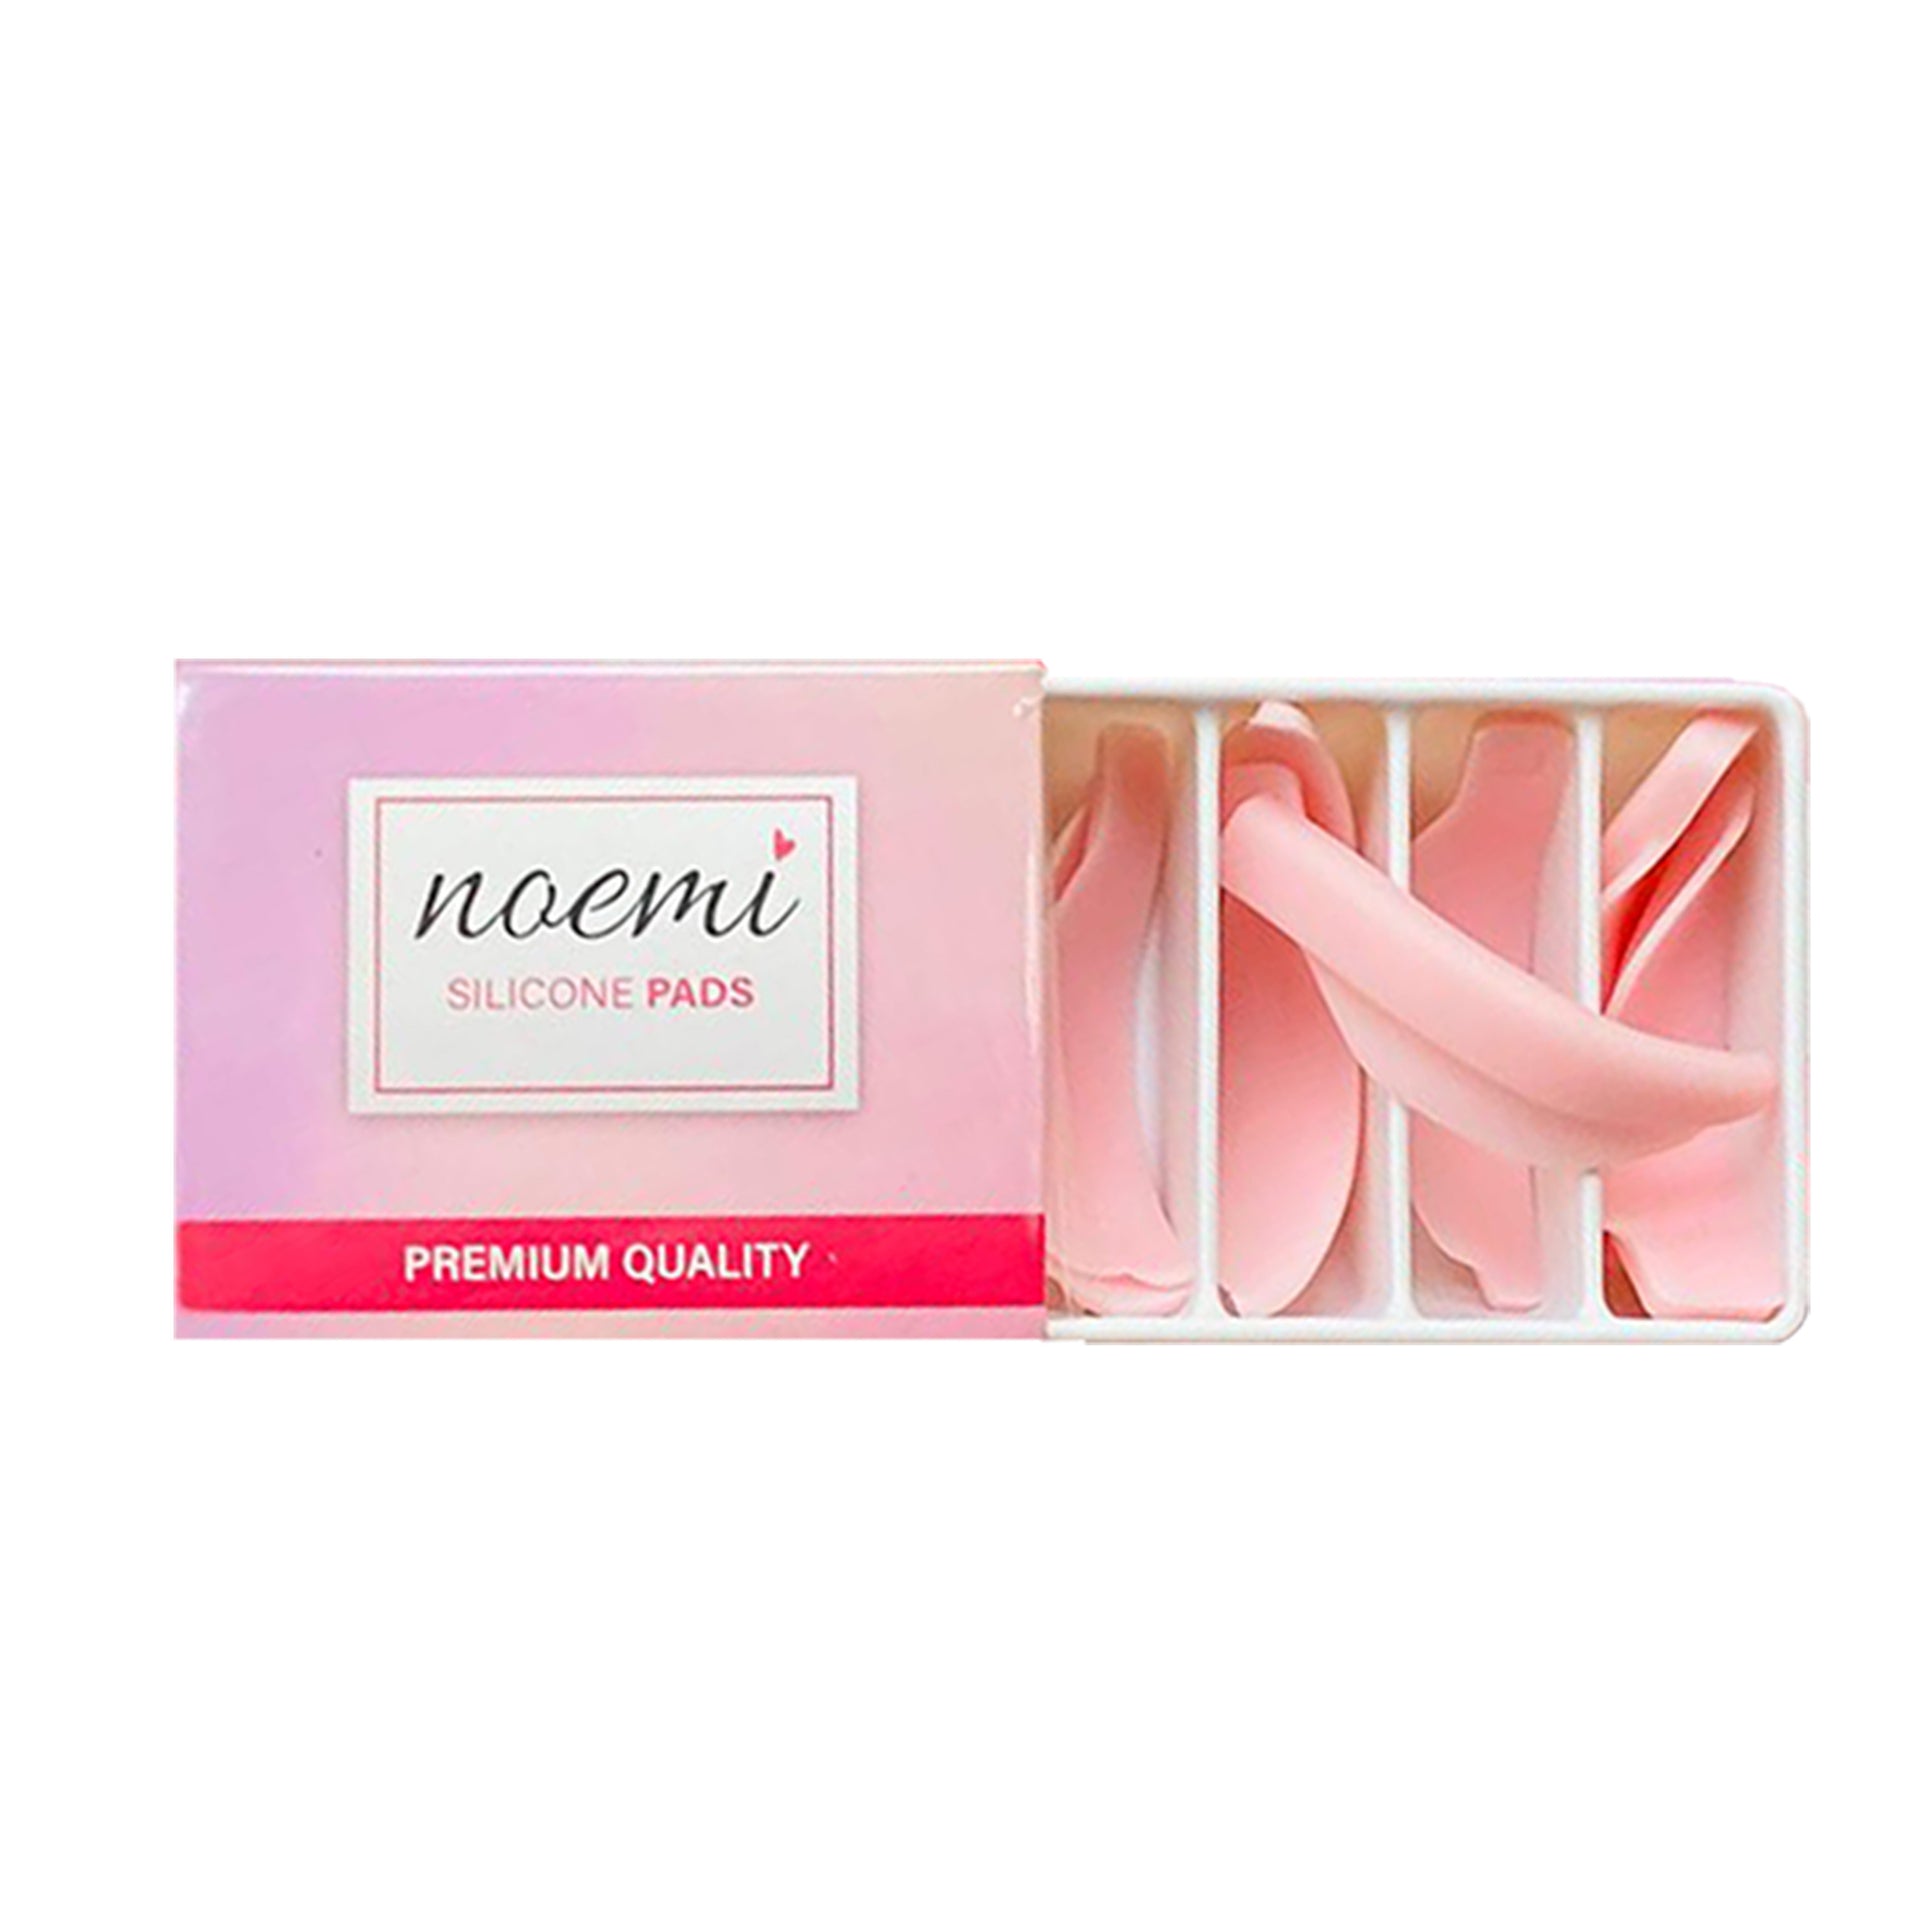 Noemi - Premium silicone pads (mix box 4 pairs)